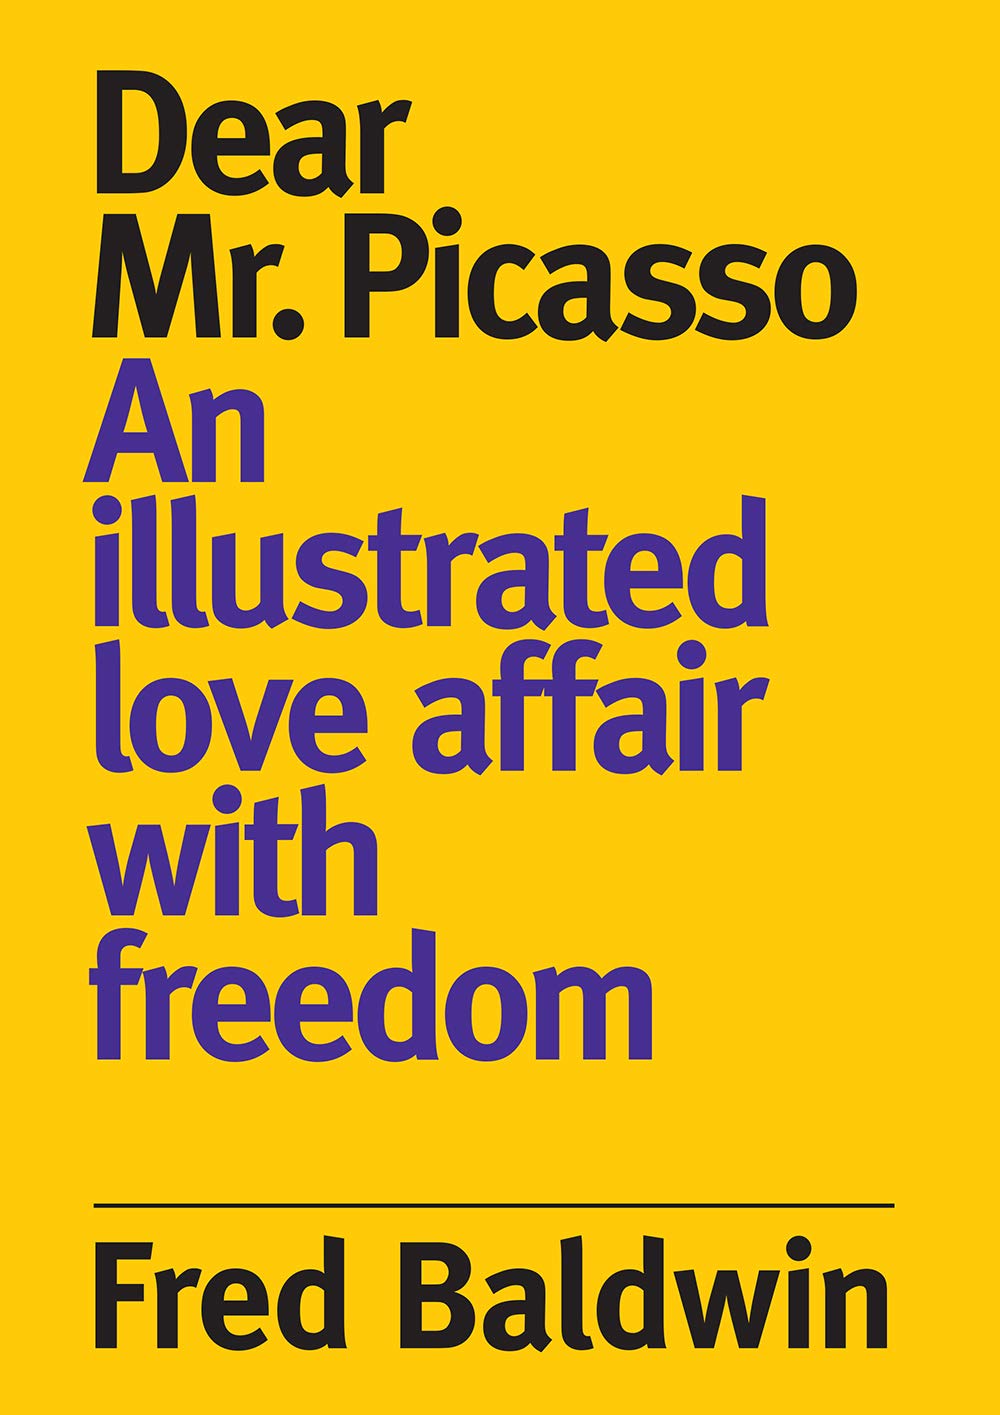 Dear Mr. Picasso